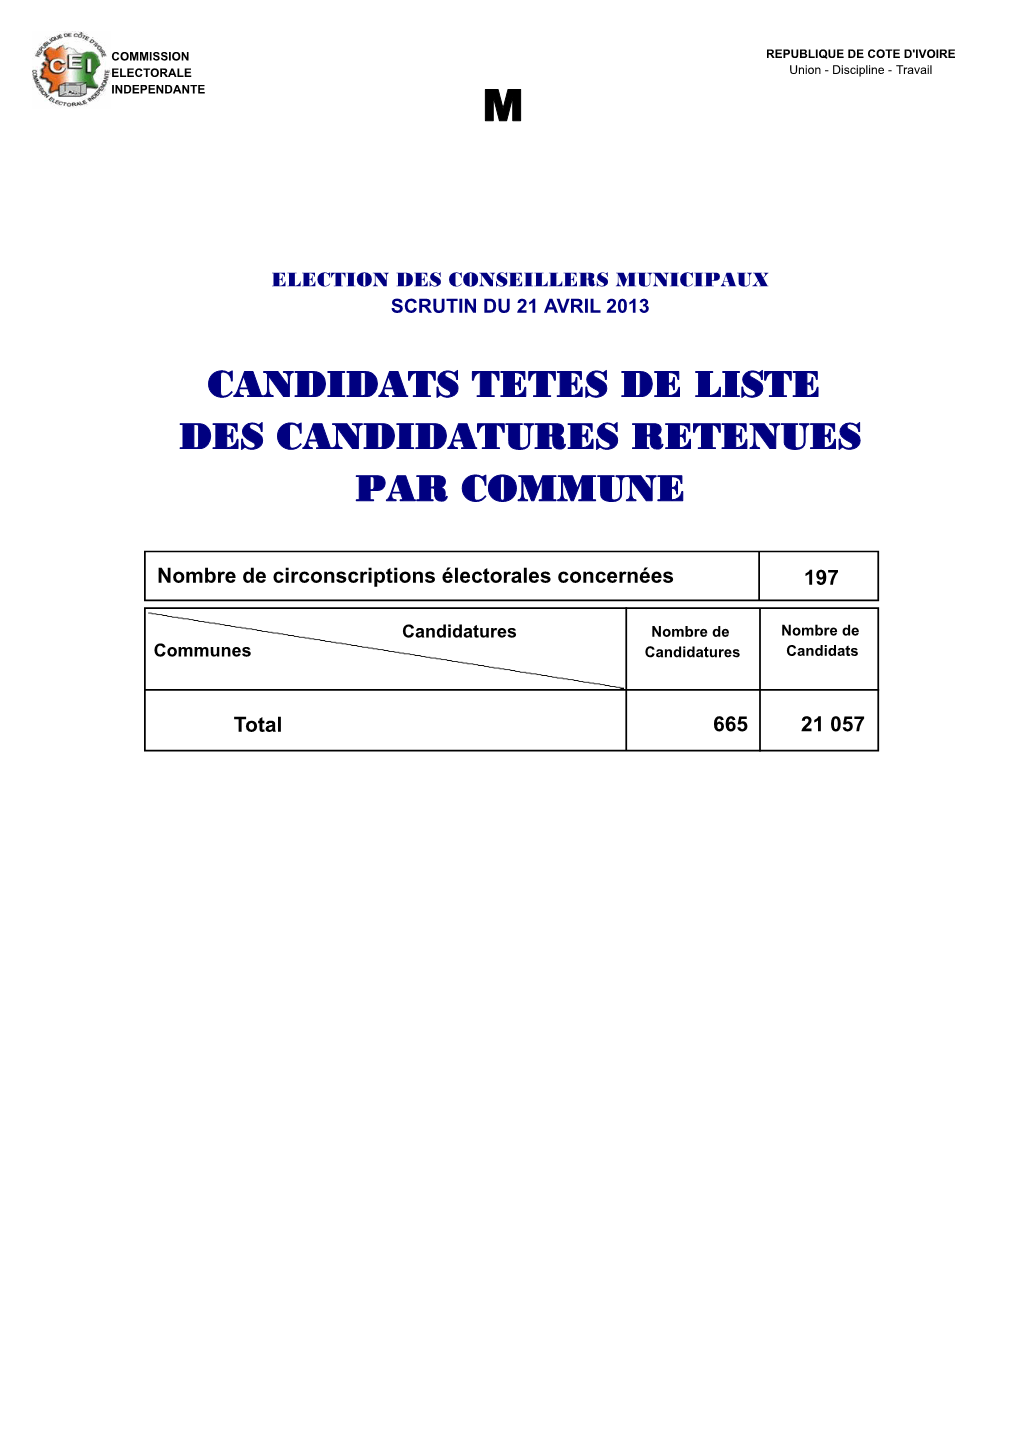 M-Candidats Tetes De Liste Par Commune